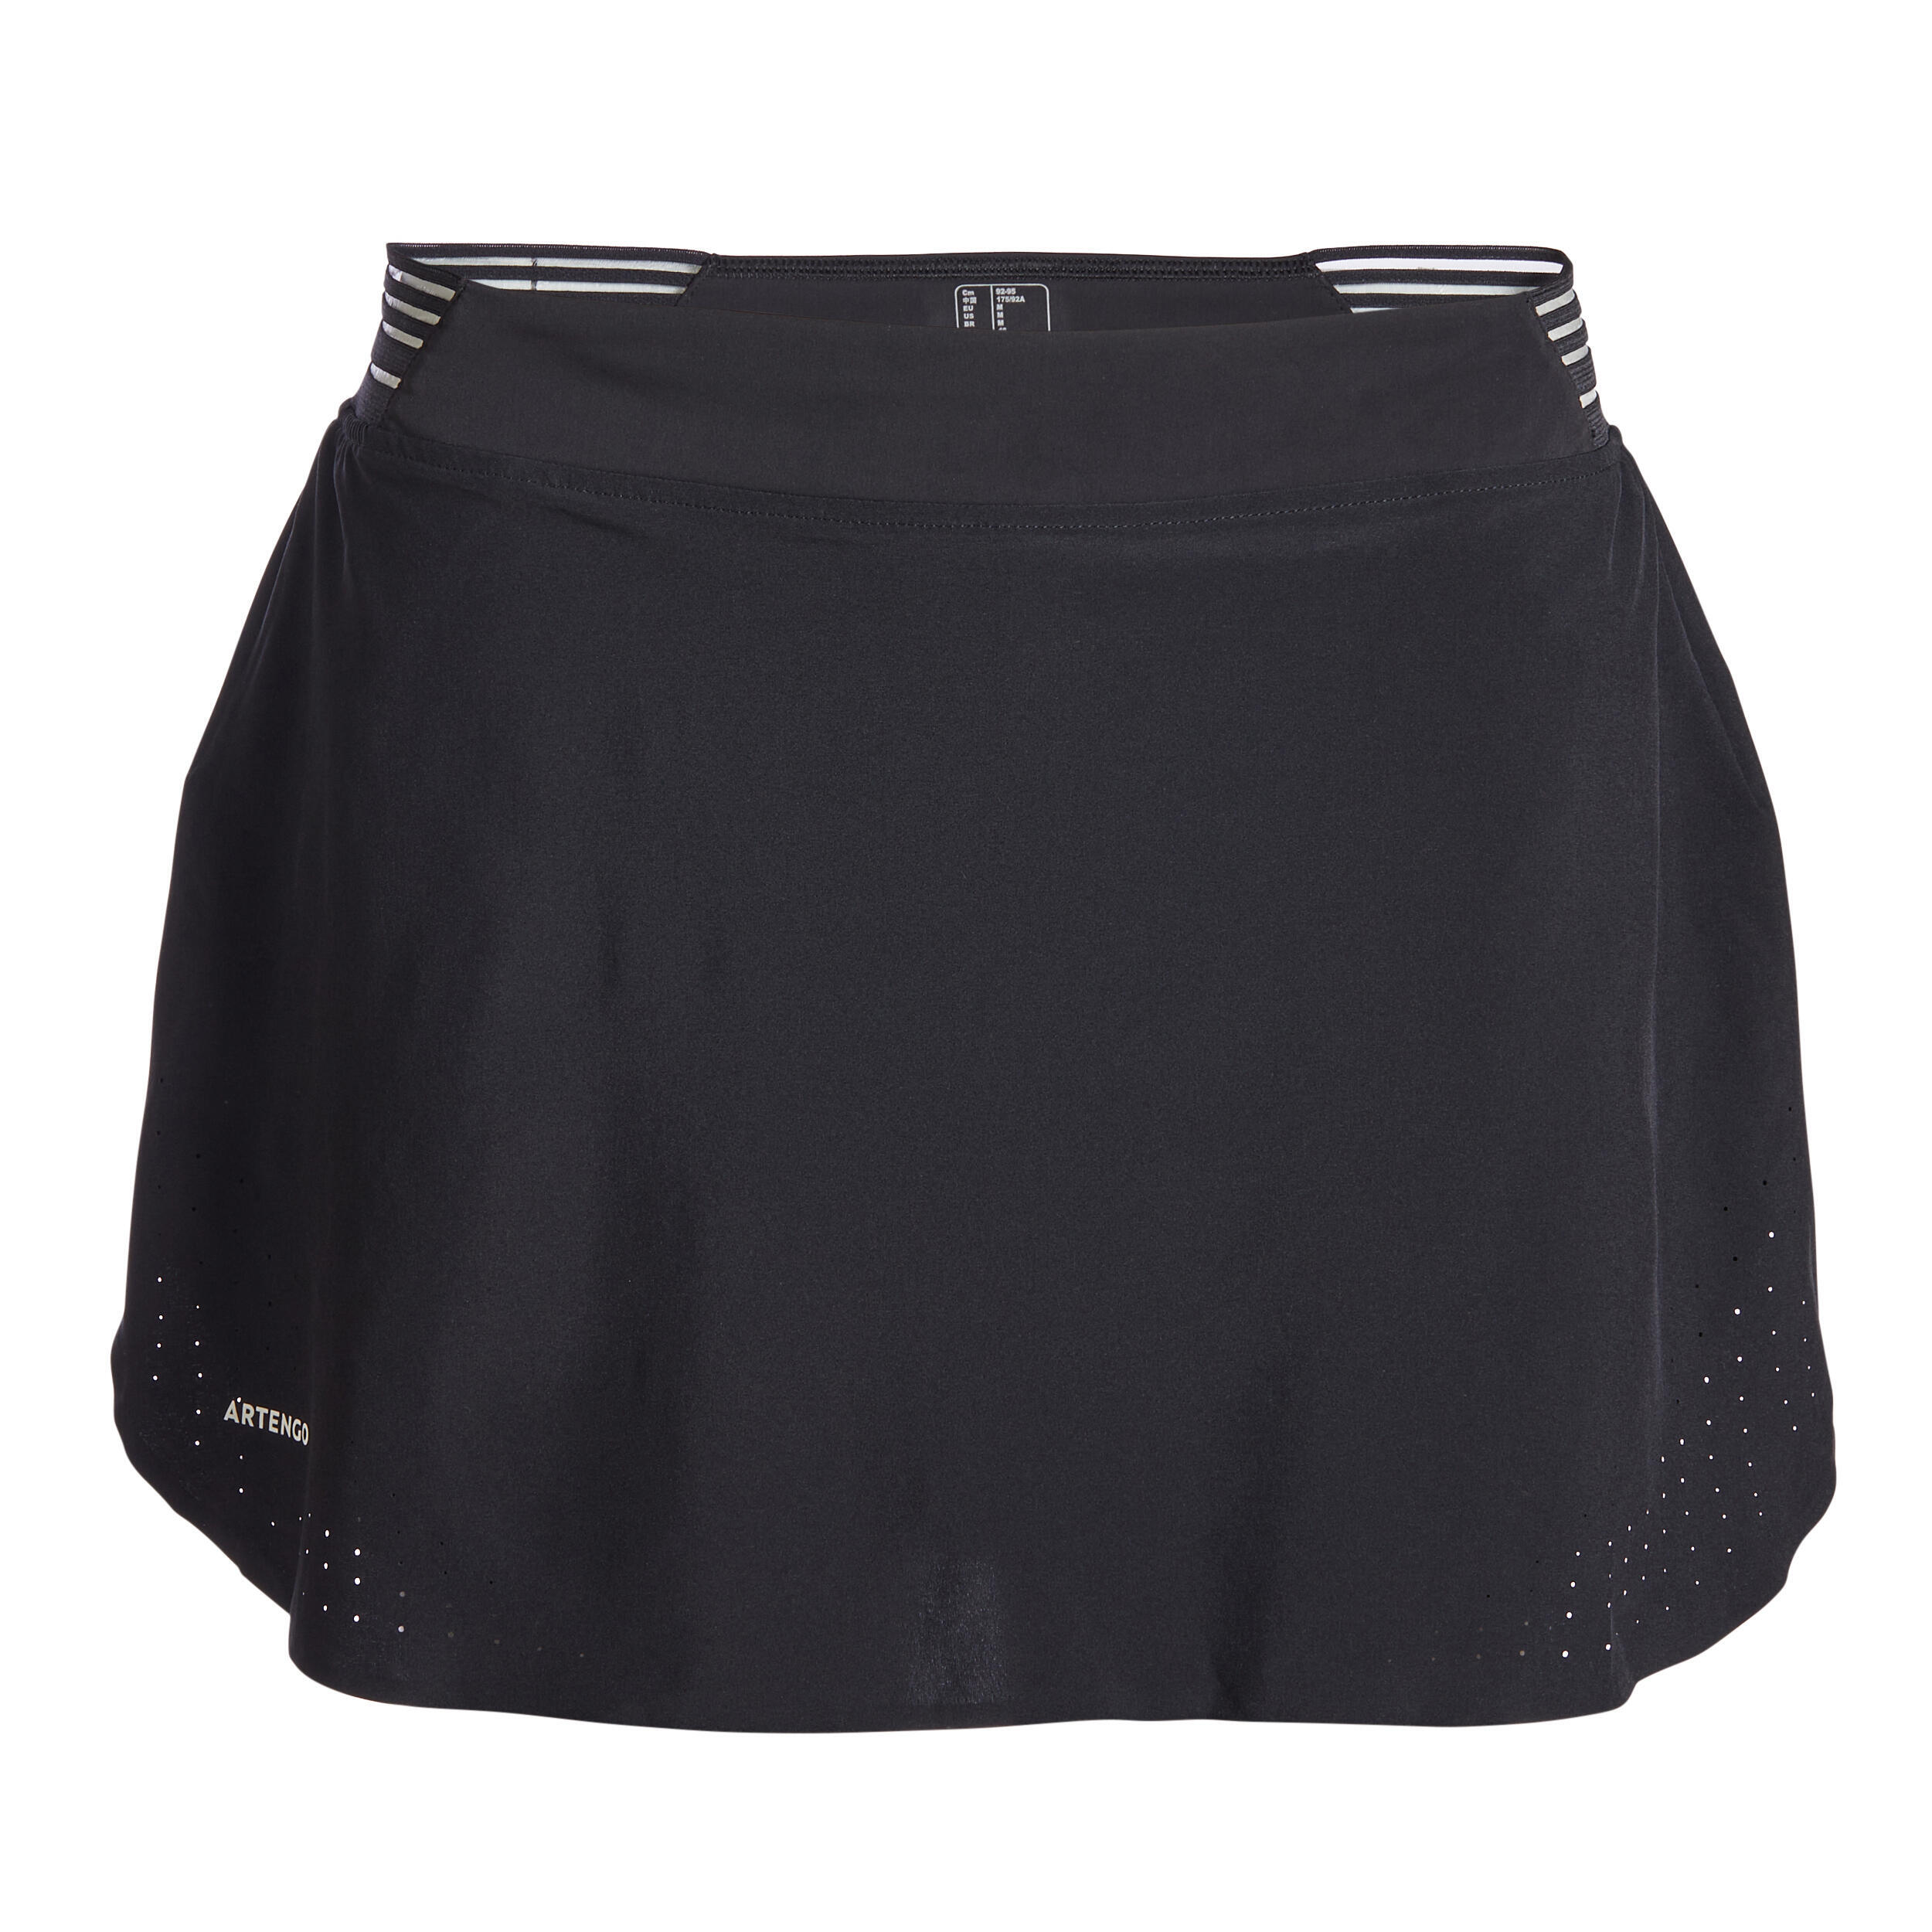 ARTENGO Refurbished Womens Tennis Skirt Light 900 - A Grade